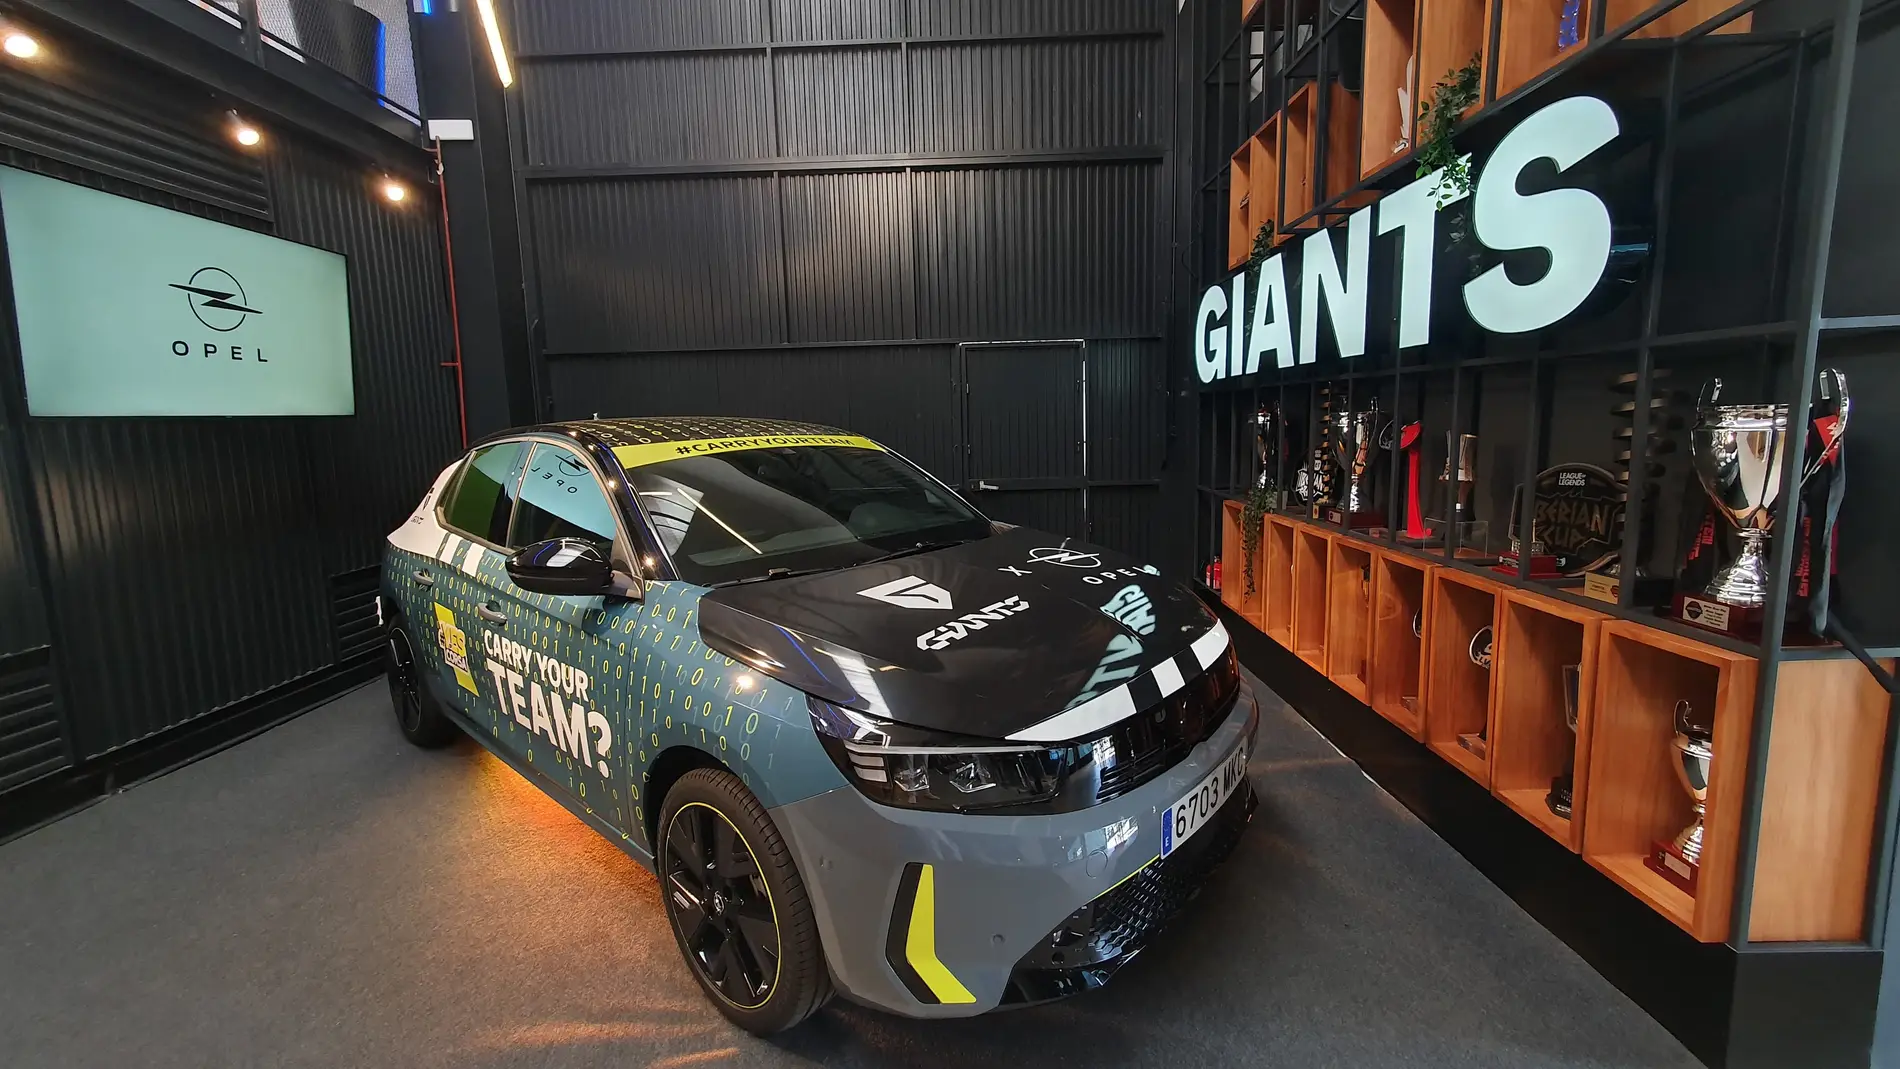 Opel llega a la generación Z en el Home of Giants